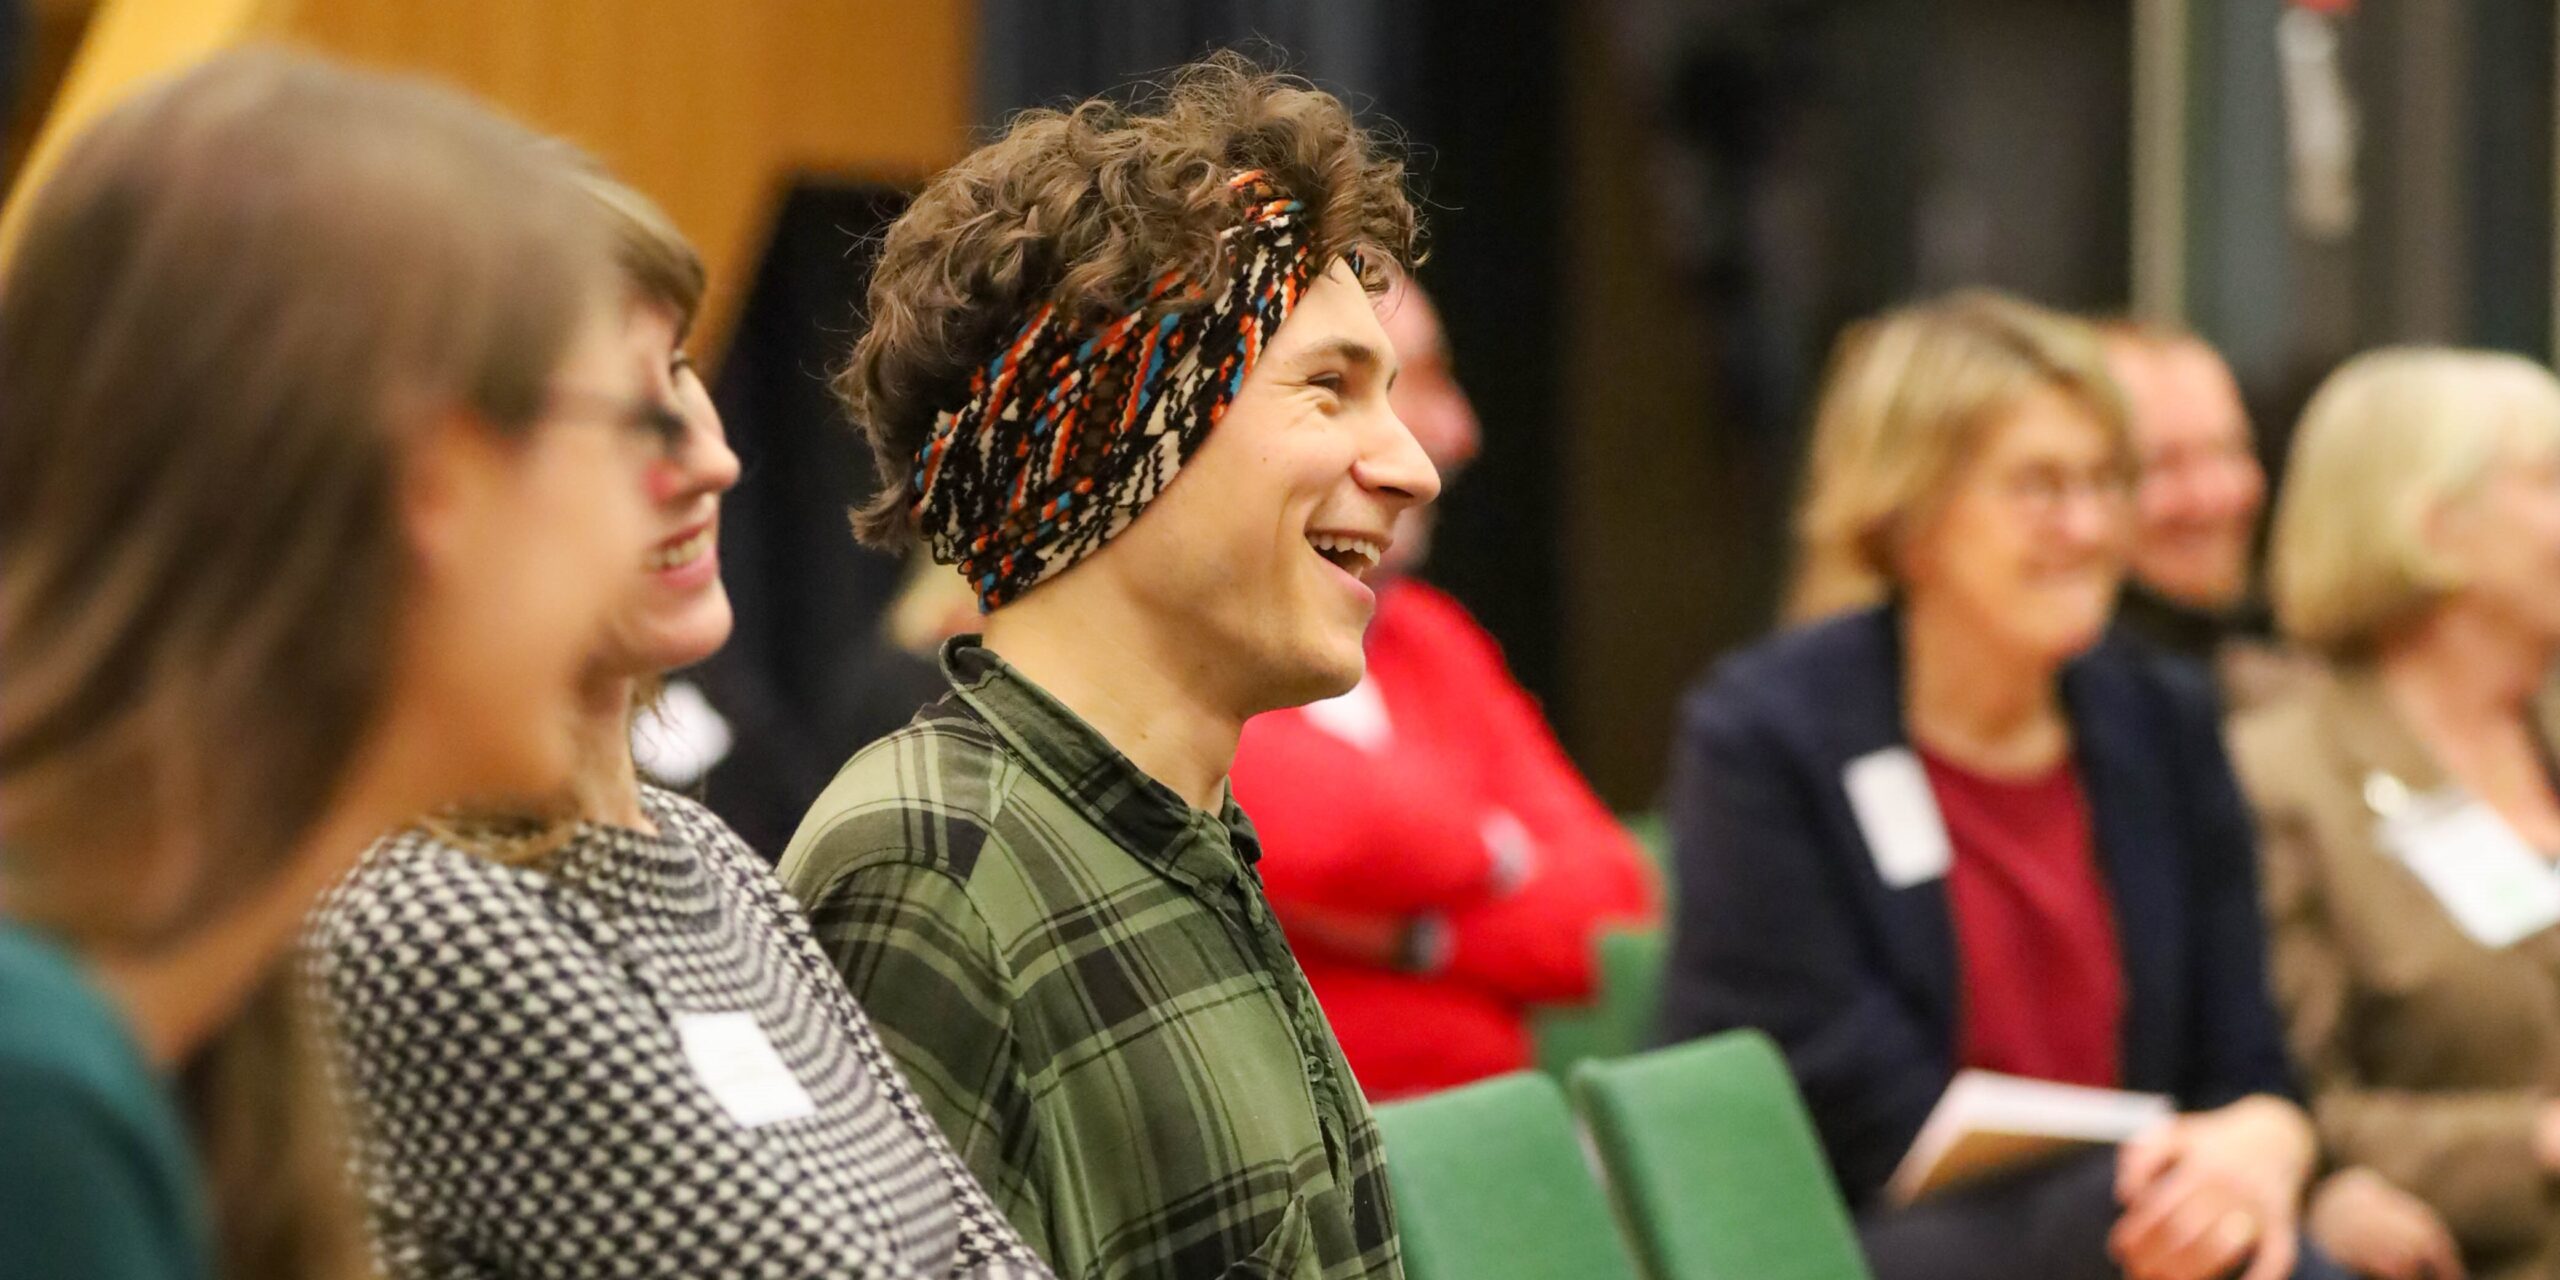 Ein lachender junger Mann auf einer Konferenz.